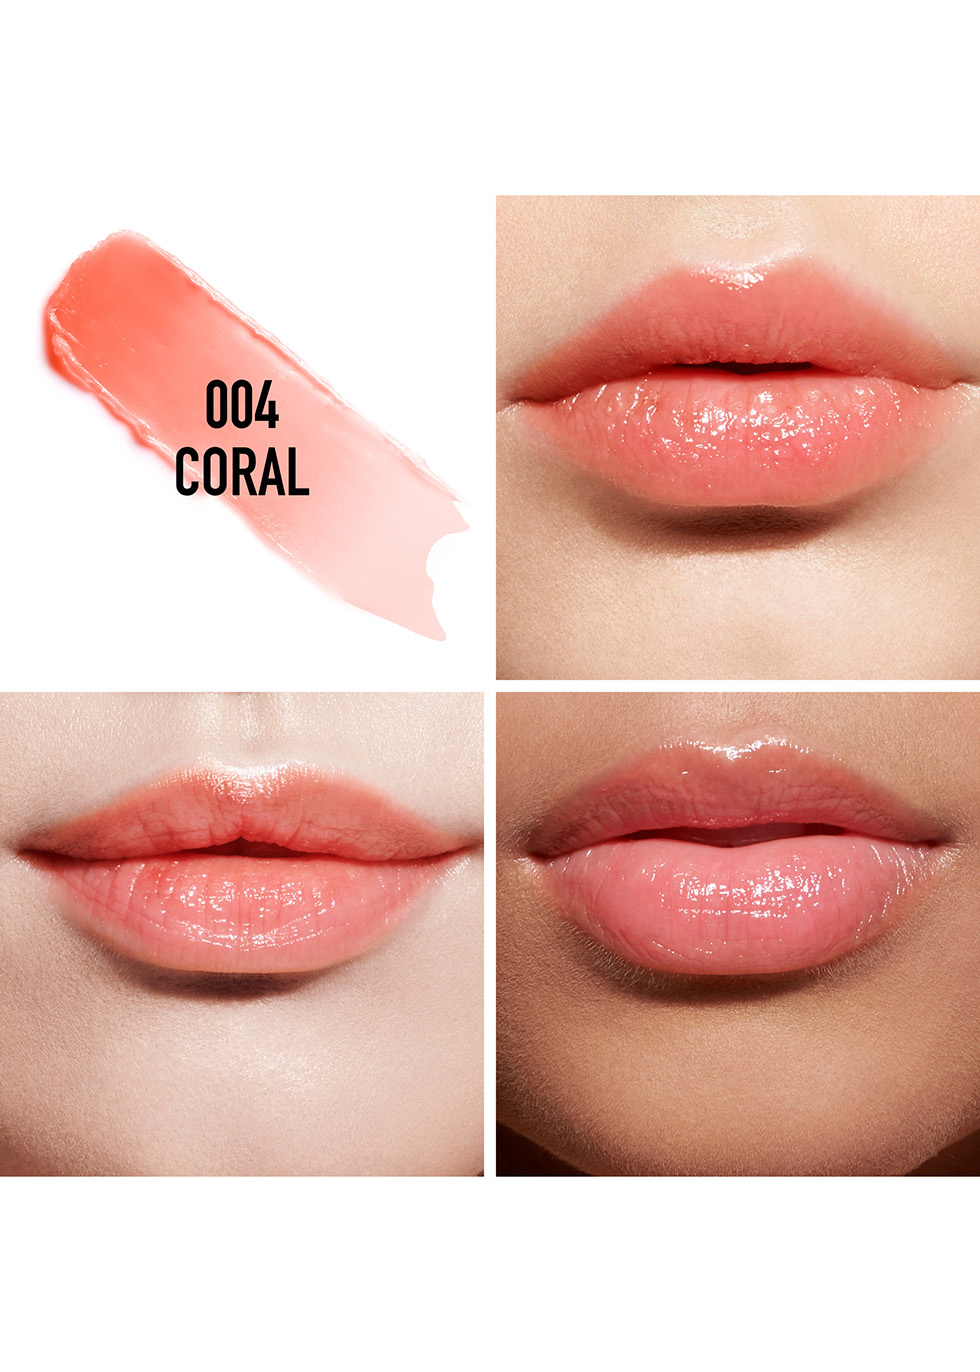 dior coral lipstick